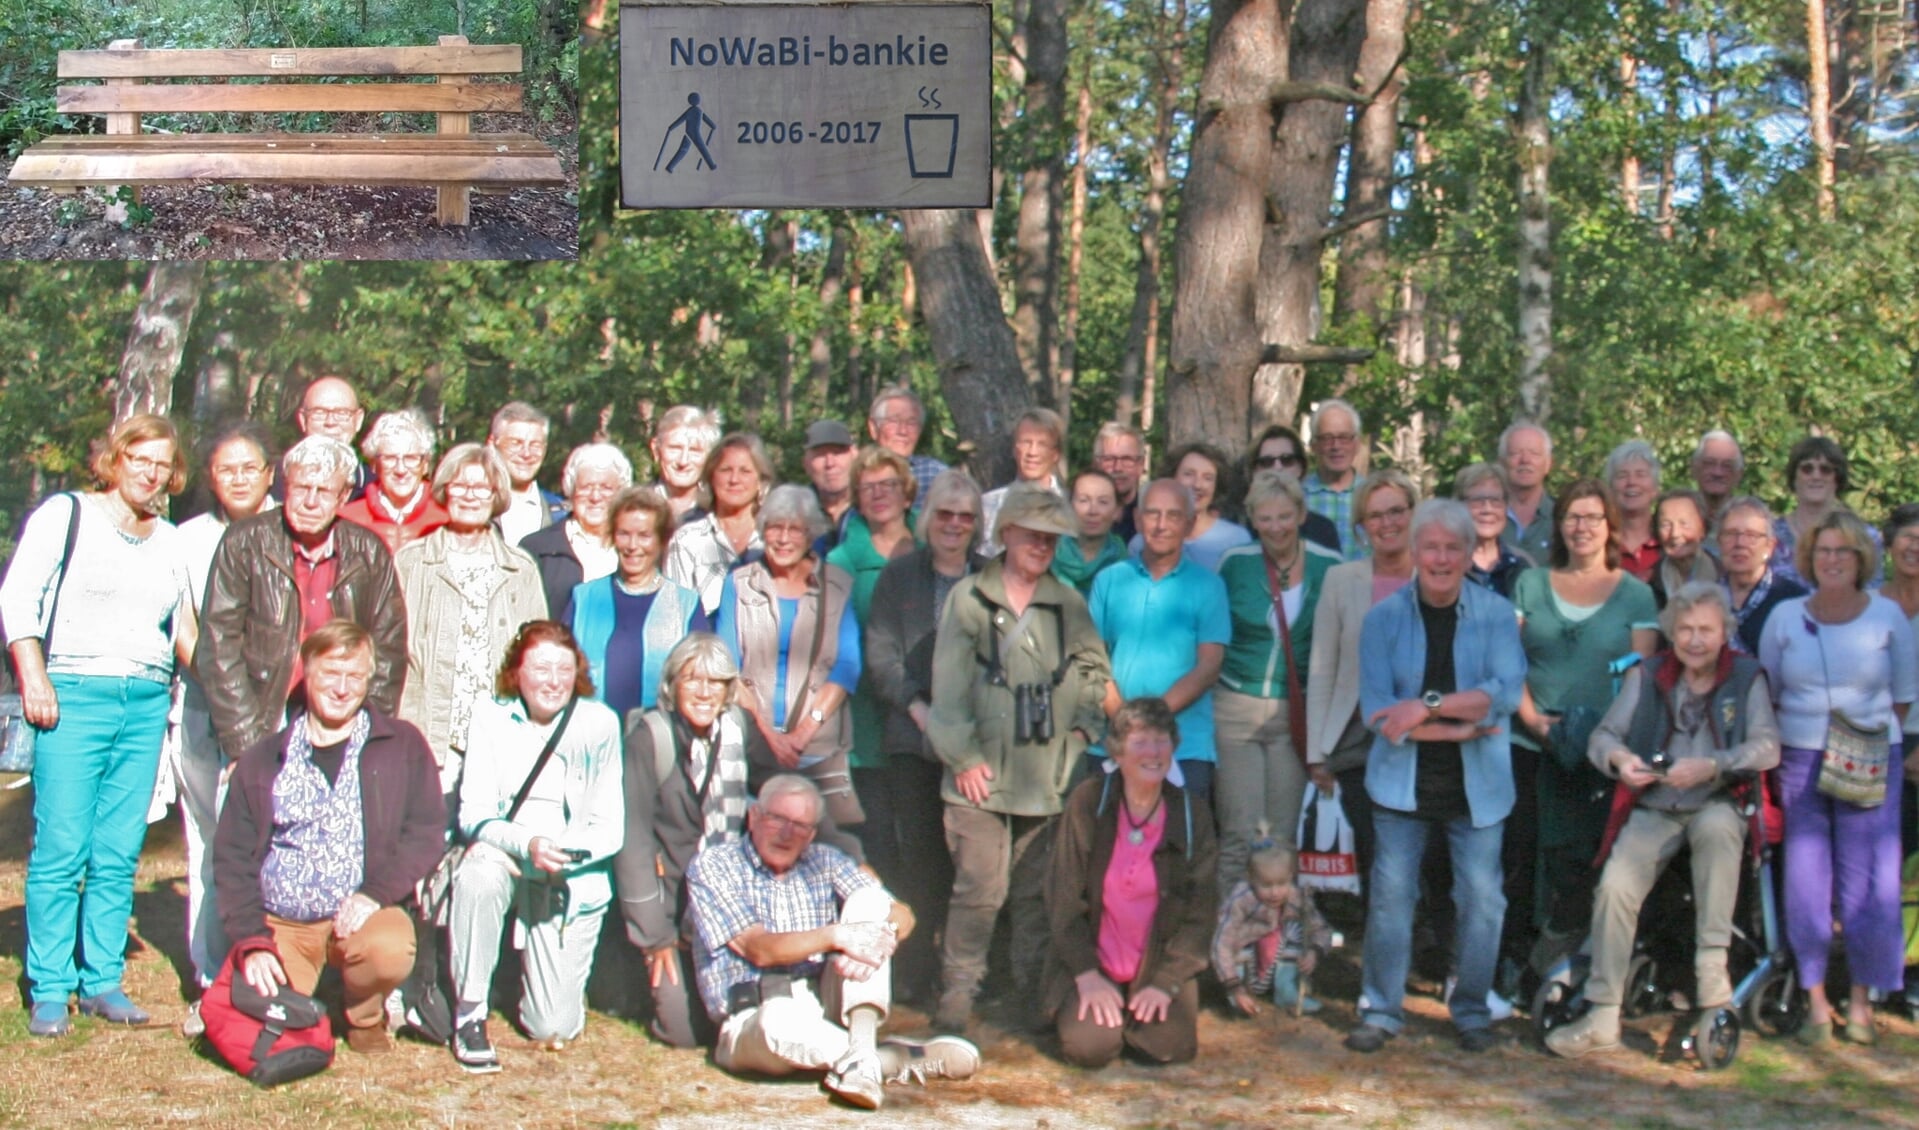 Een trouwe Nordic Walking groep heeft het bankje in het bos financieel mogelijk gemaakt.